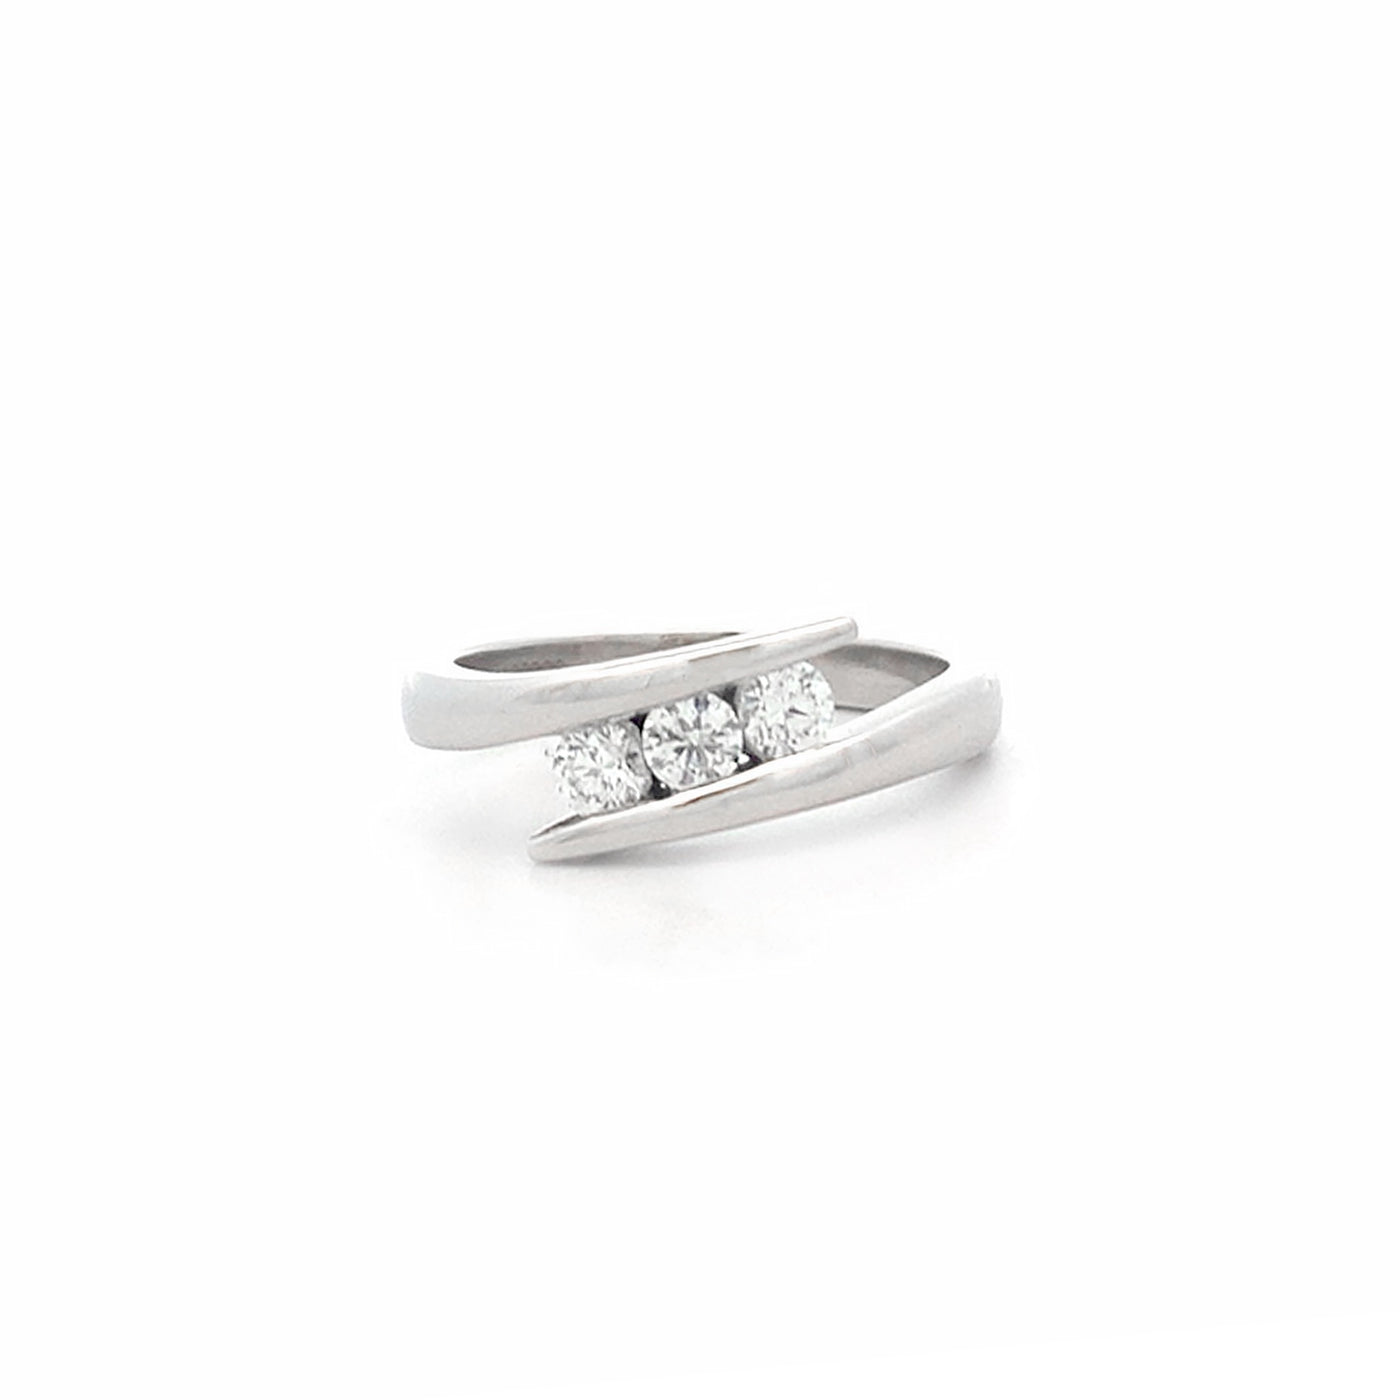 Embrace: Brilliant Cut Diamond Three Stone Ring in Platinum | 0.30ctw